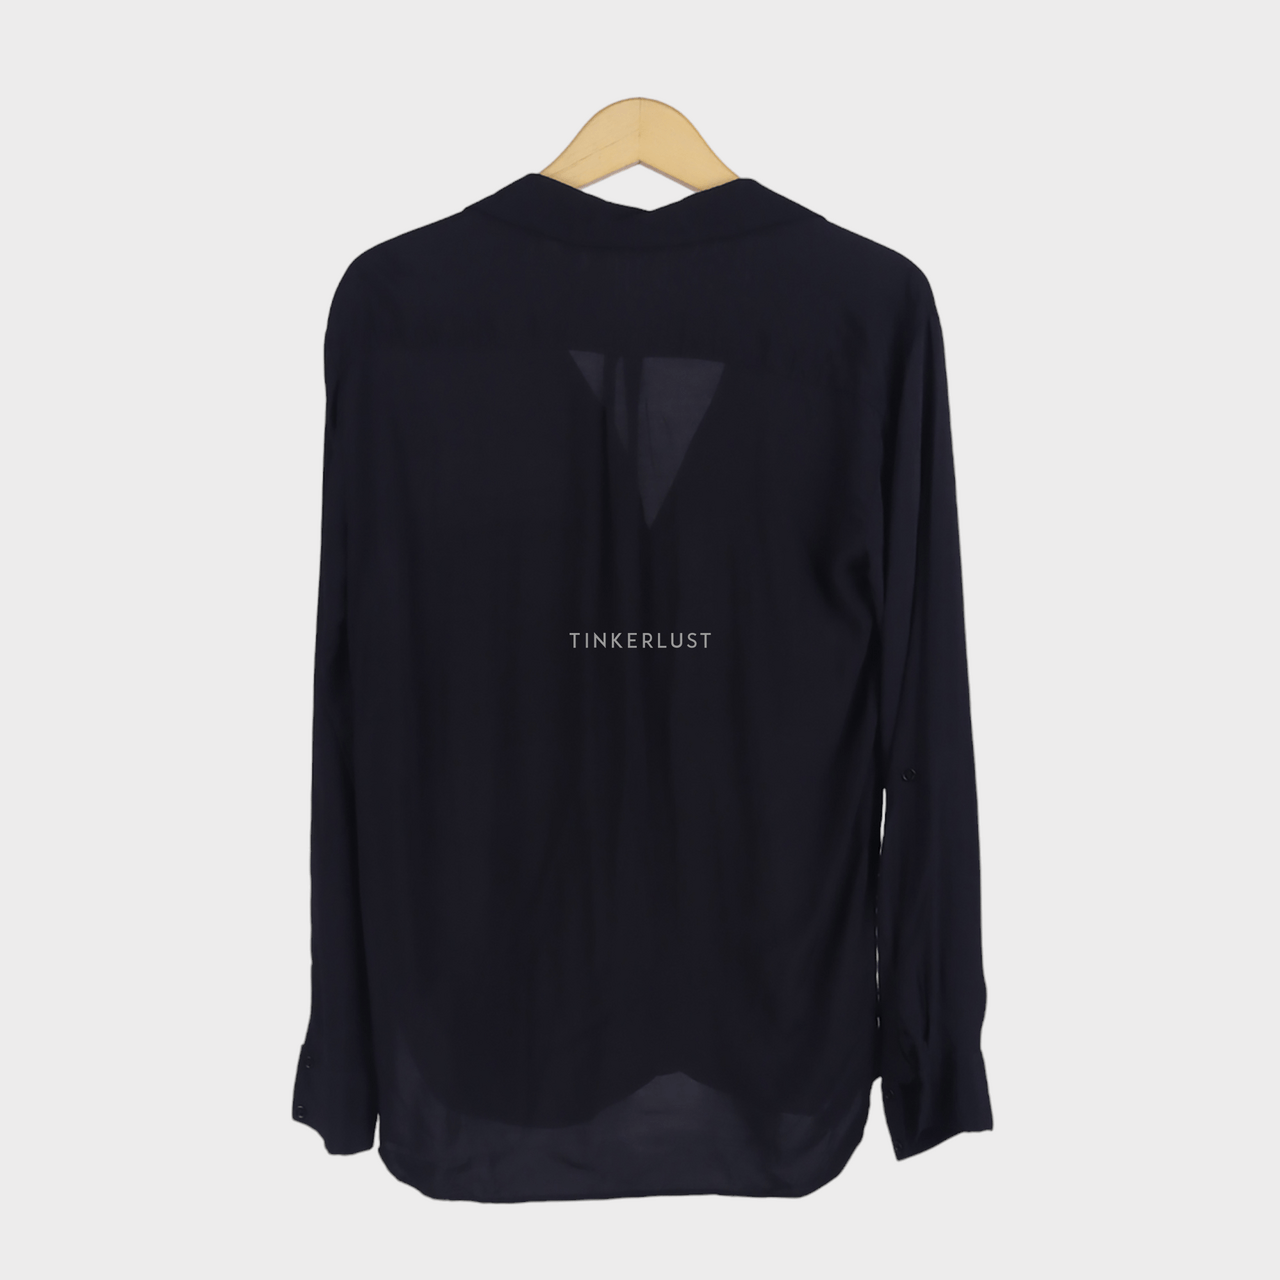 Zara Black Shirt